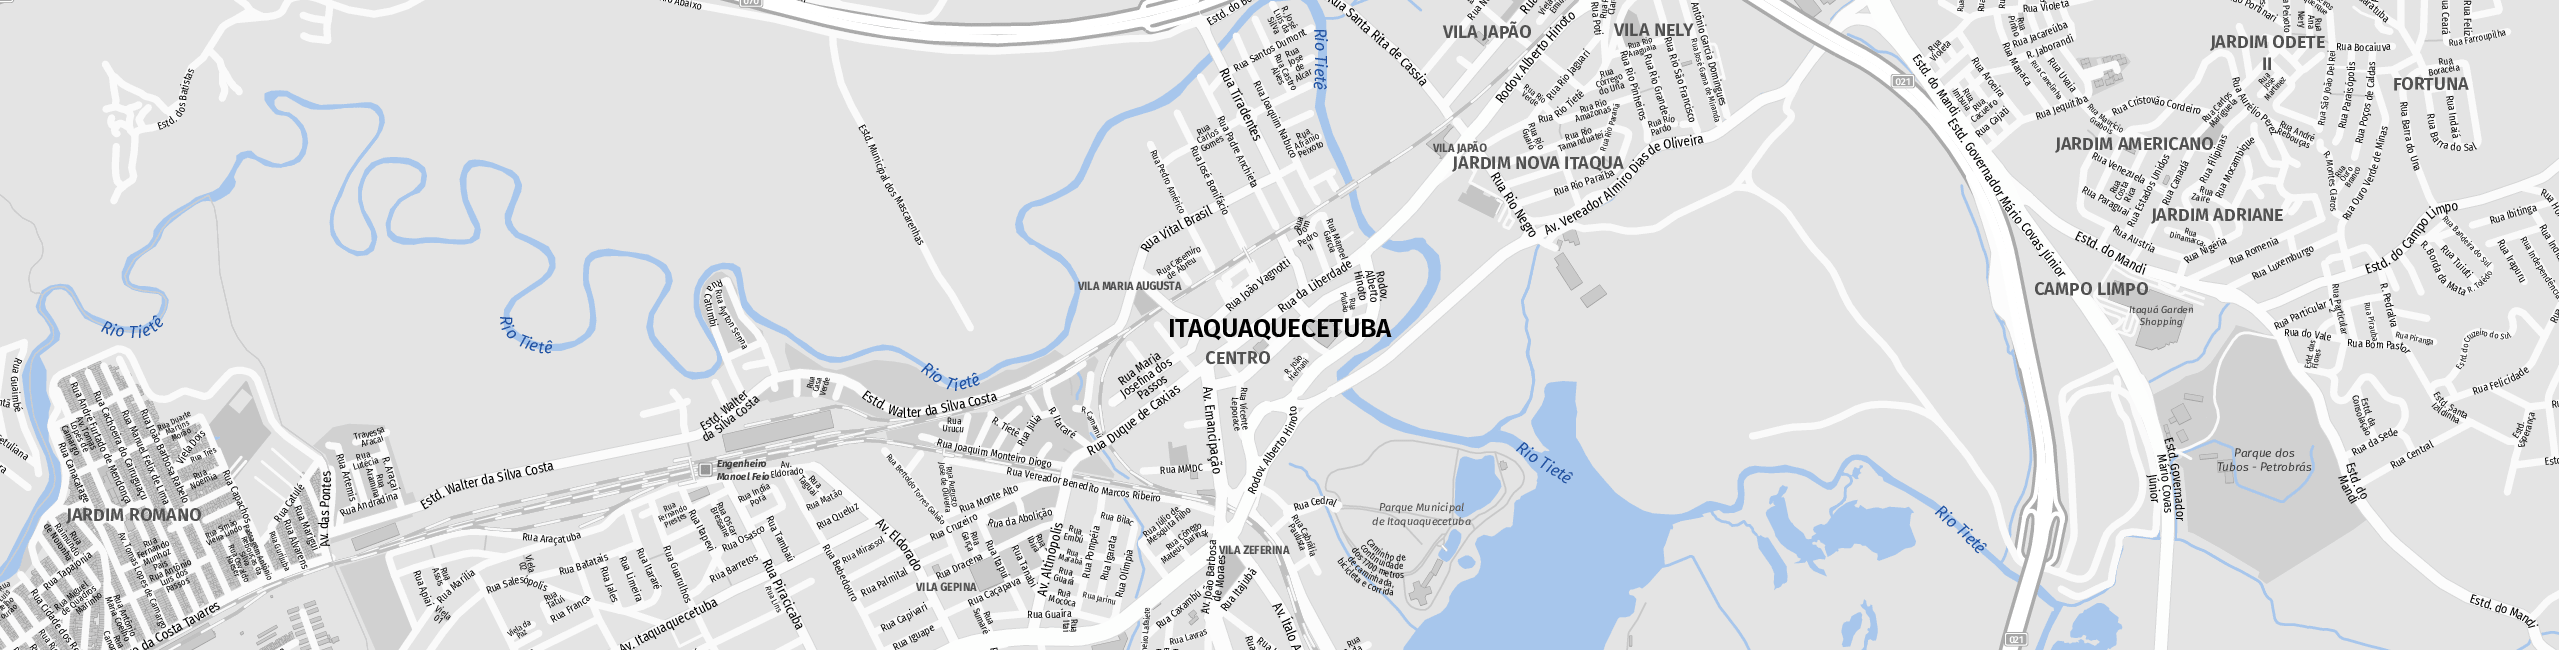 Stadtplan Itaquaquecetuba zum Downloaden.